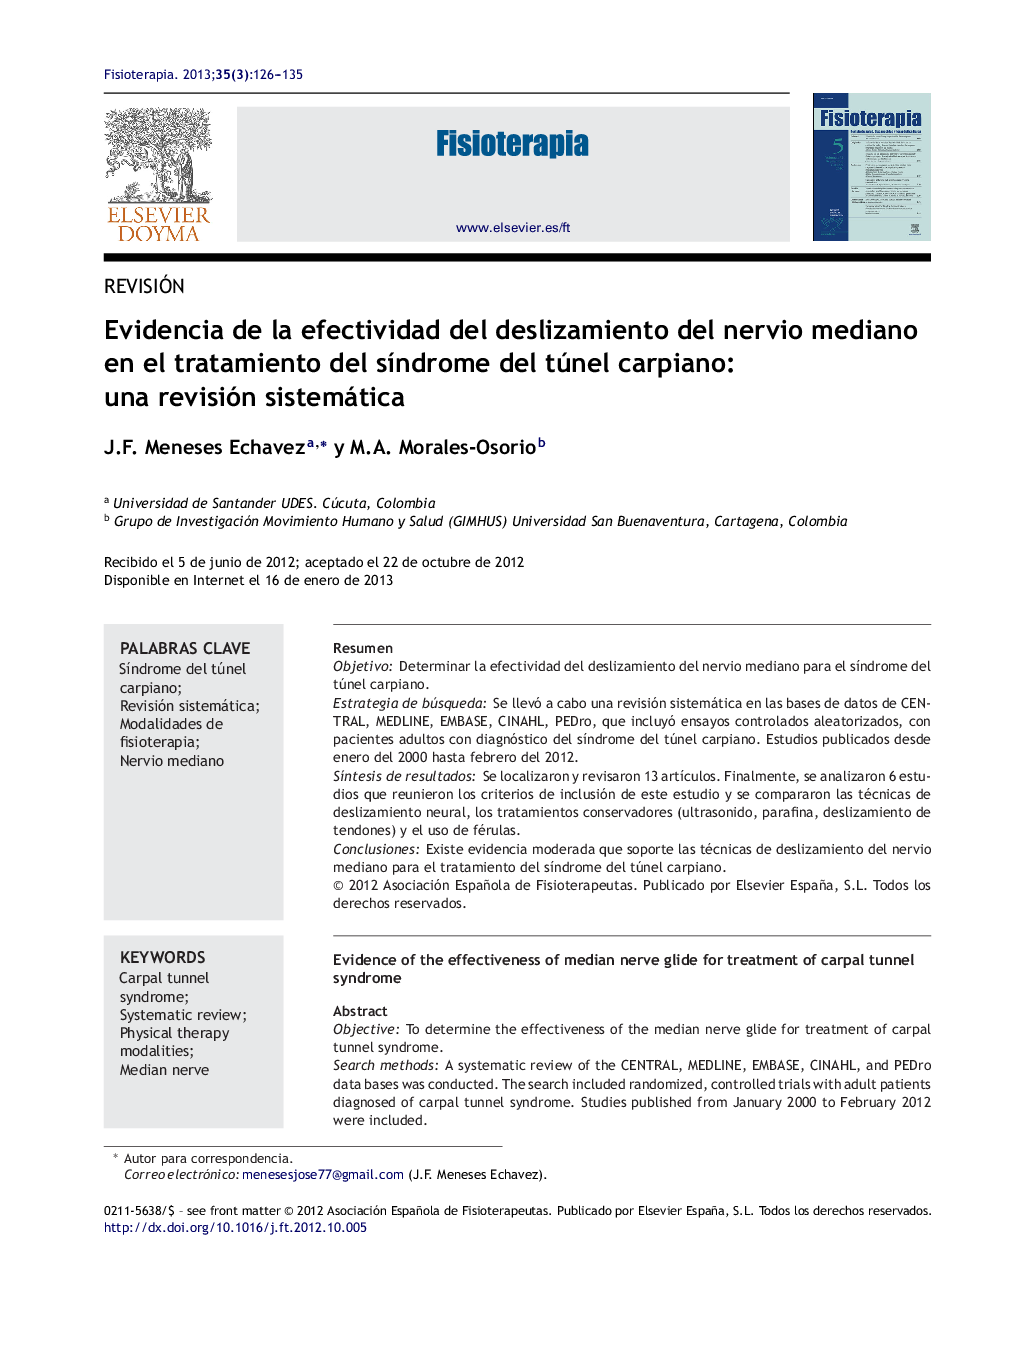 Evidencia de la efectividad del deslizamiento del nervio mediano en el tratamiento del sÃ­ndrome del túnel carpiano: una revisión sistemática